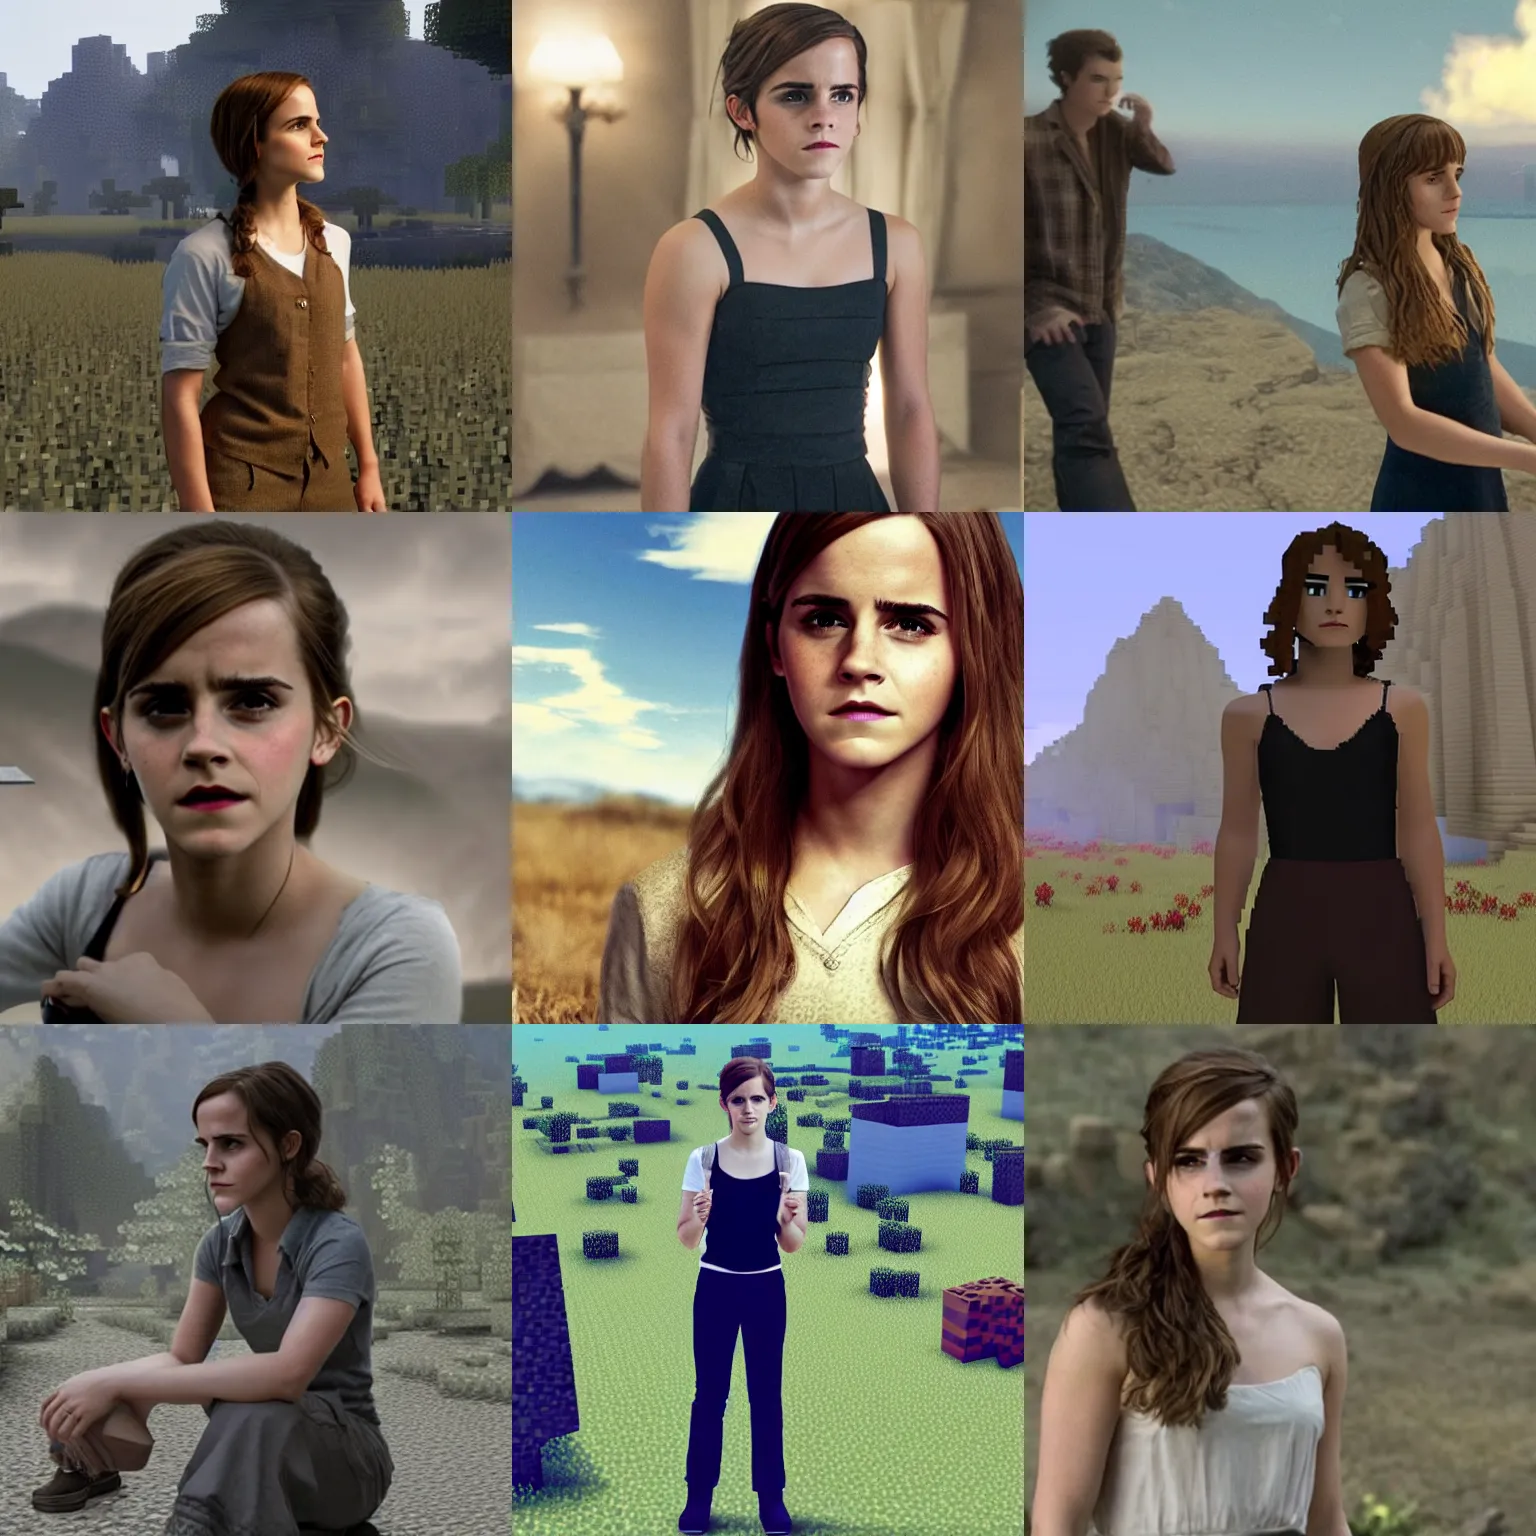 Prompt: Movie still of Emma Watson in Minecraft